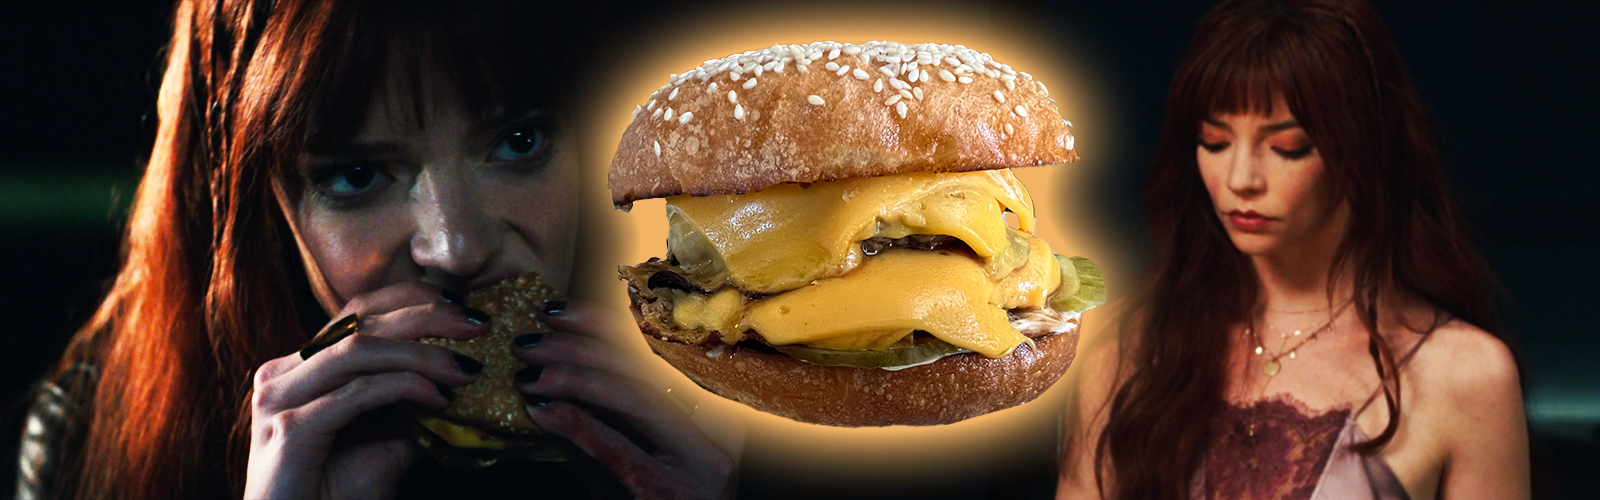 Binging with Babish: Cheeseburger from The Menu 